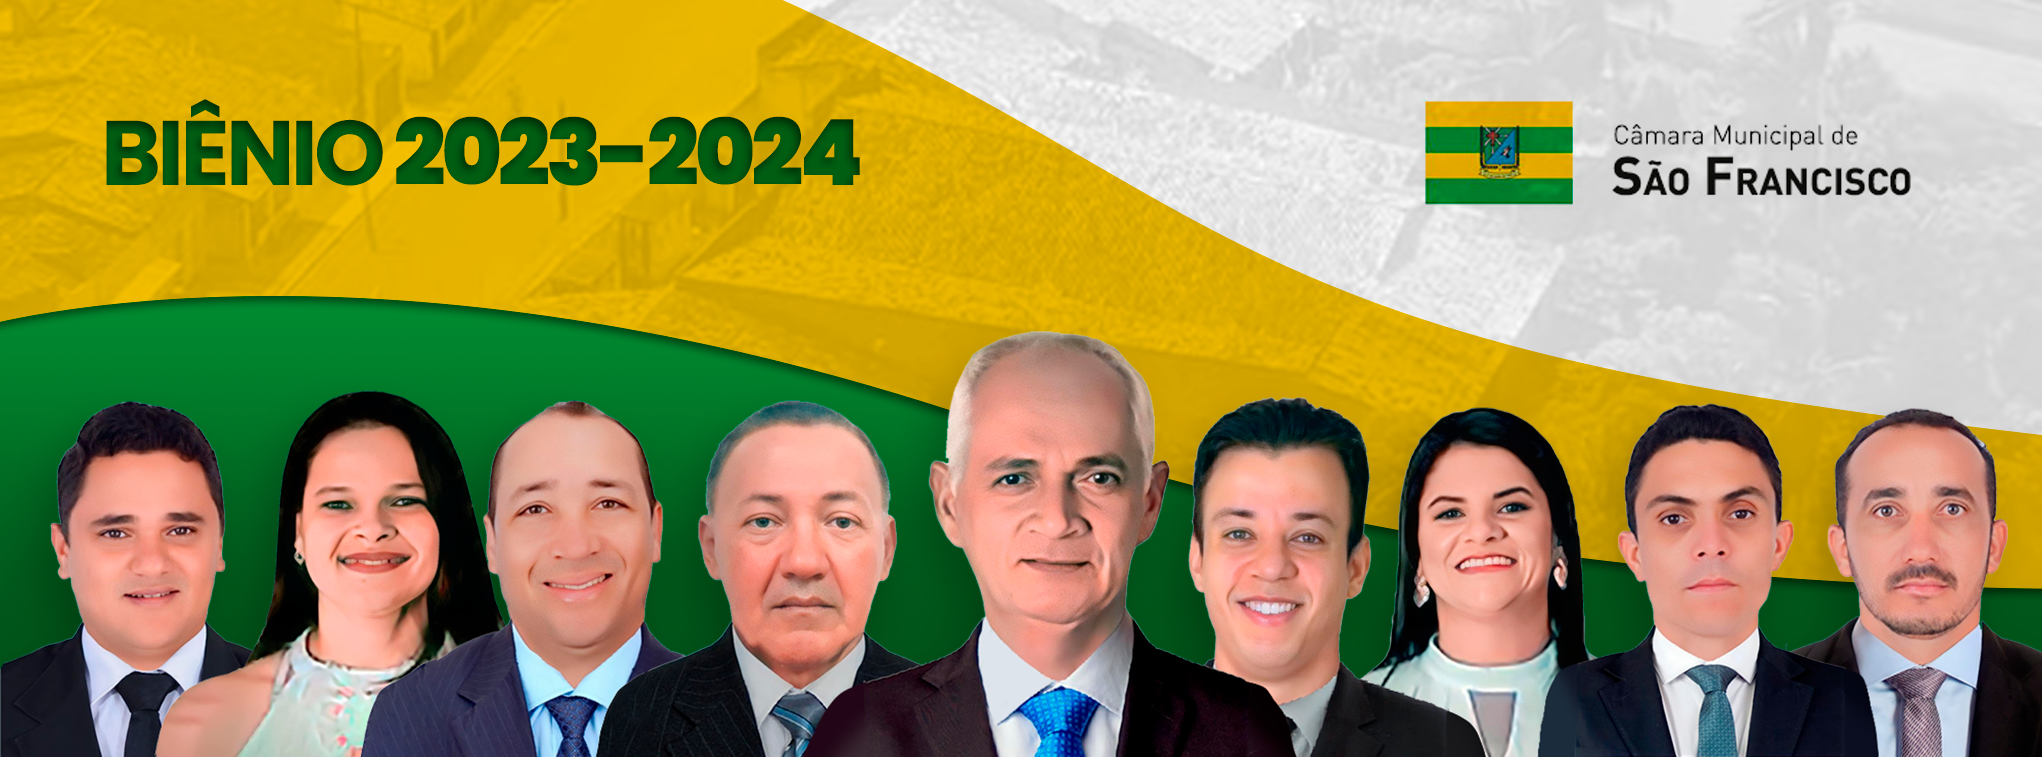 BIÊNIO 2023 - 2024